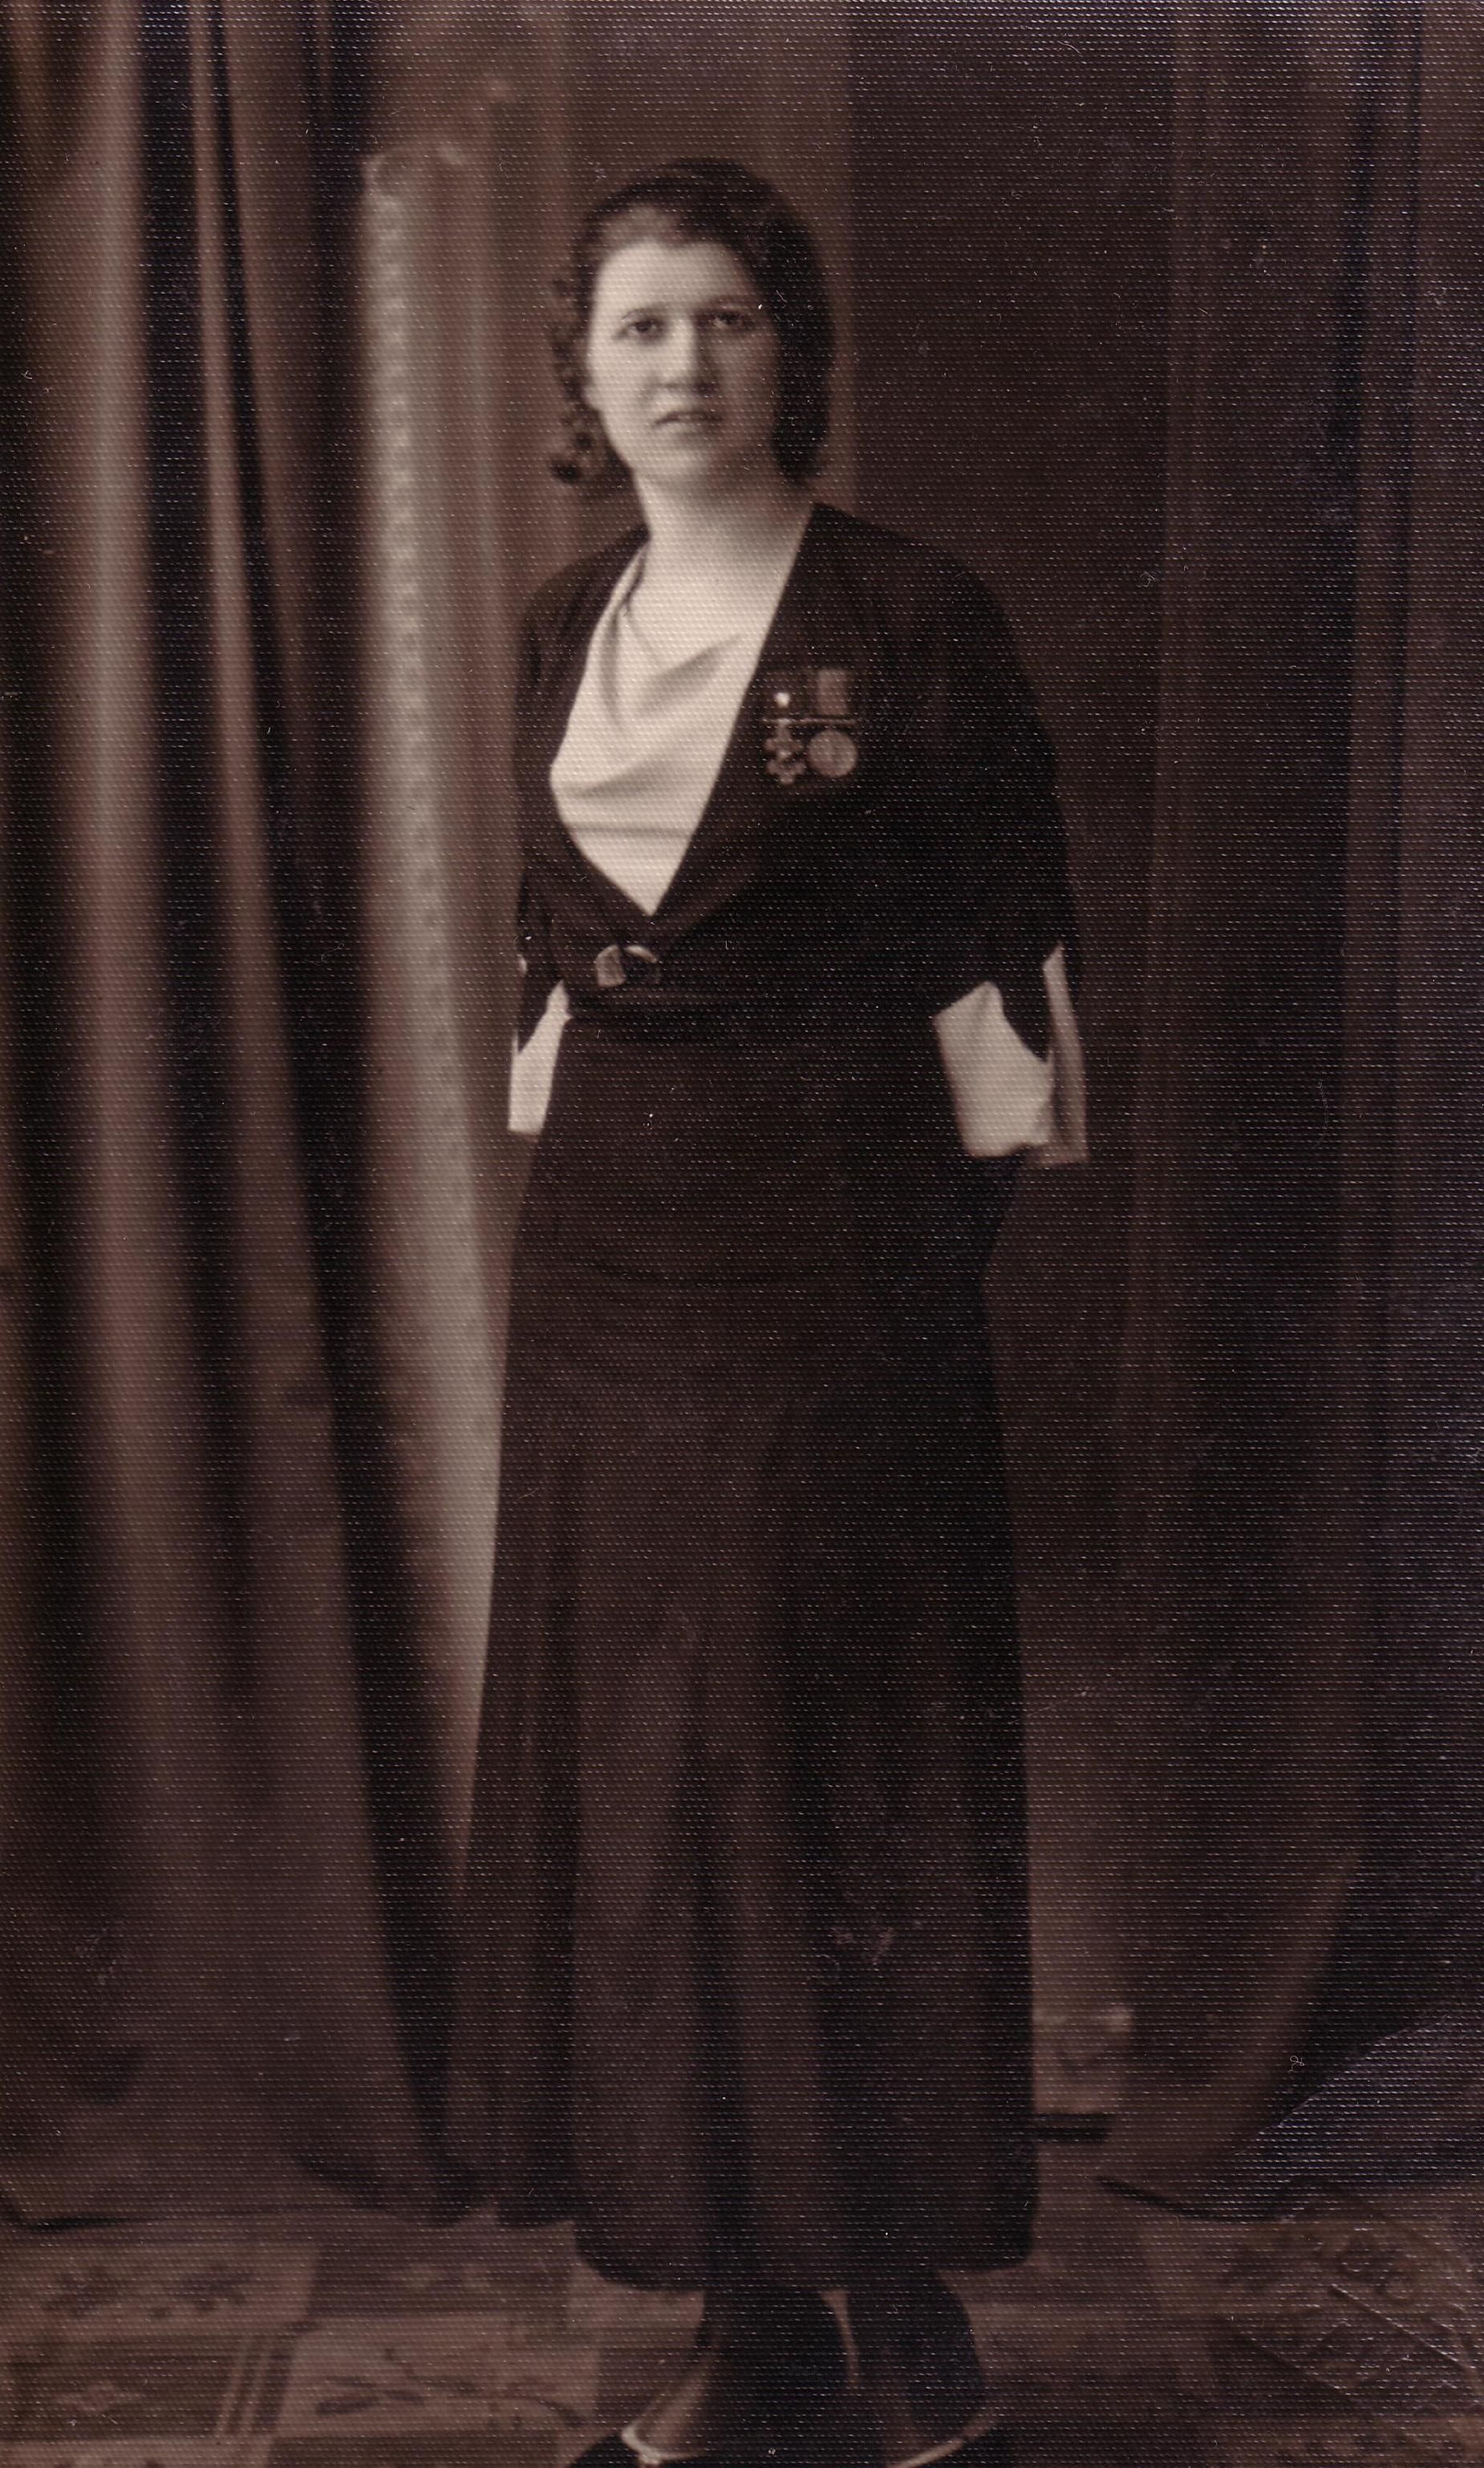 Мальвина Валейкене, единственная женщина награждённая военным Крестом Витиса. Фотография из коллекции А.Аужбикавичюса.